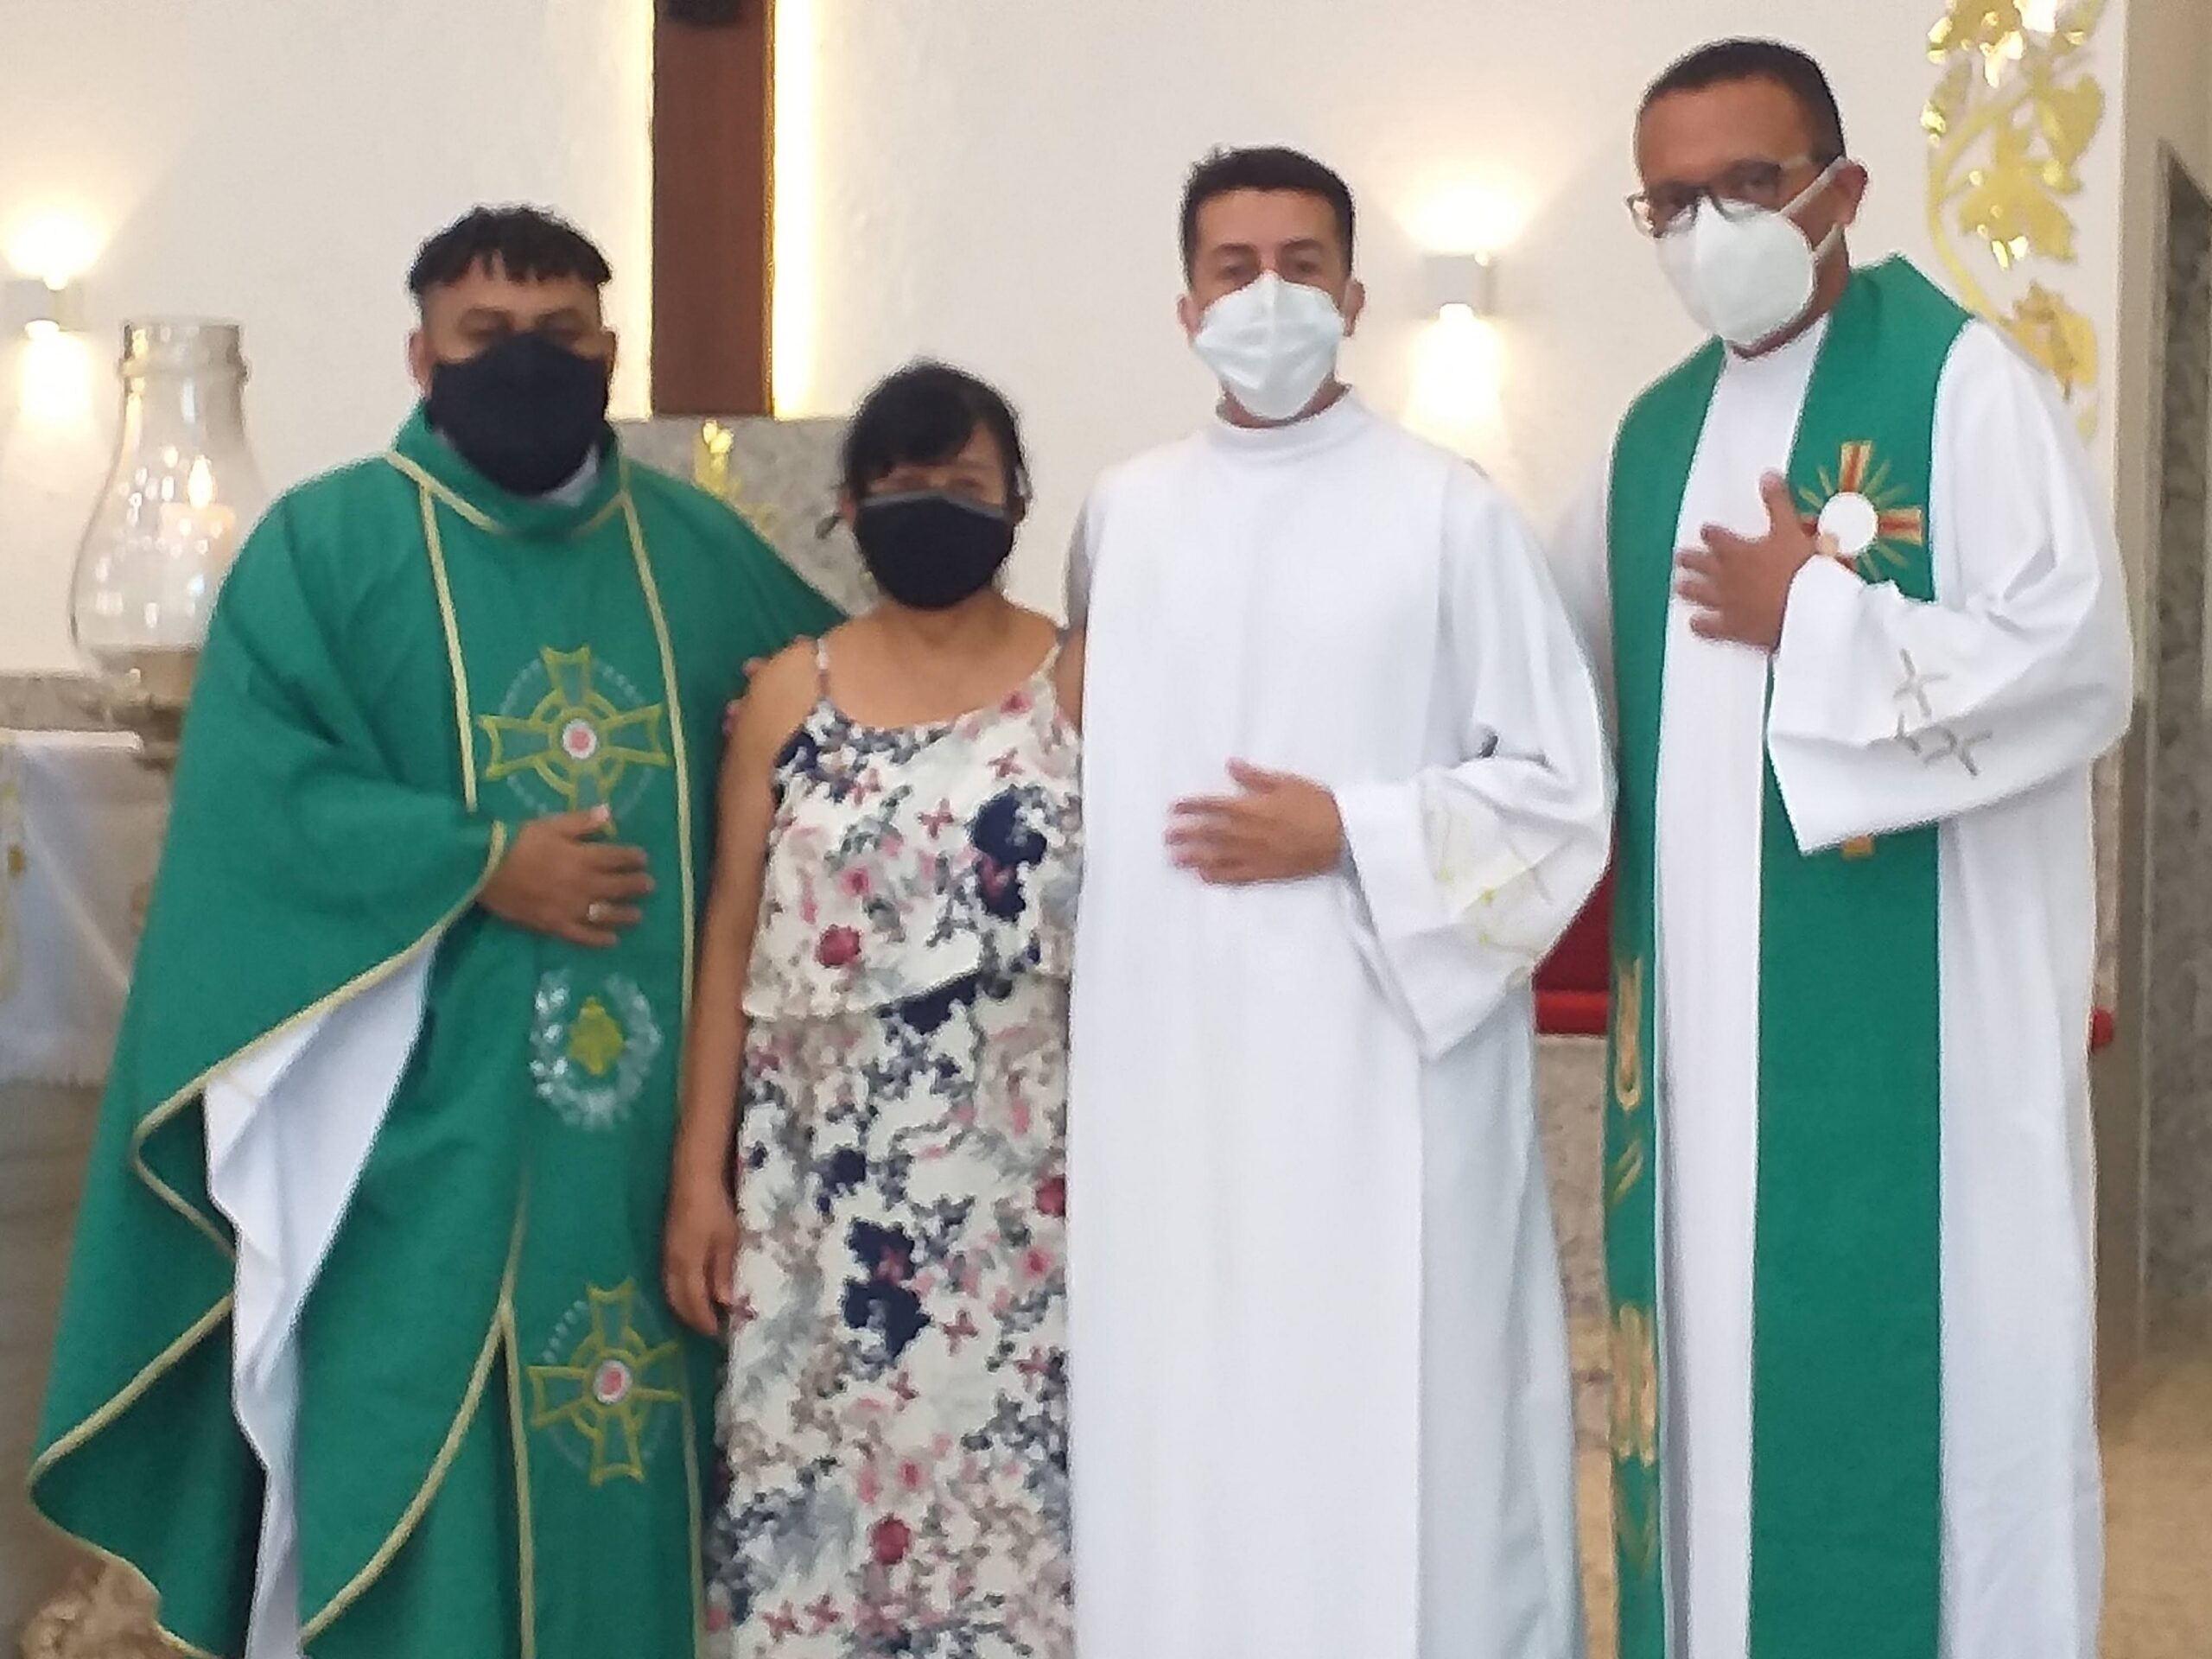 Missa de Envio do Vocacionado Erick Castello Branco de Oliveira para o Pré-noviciado Sacramentino